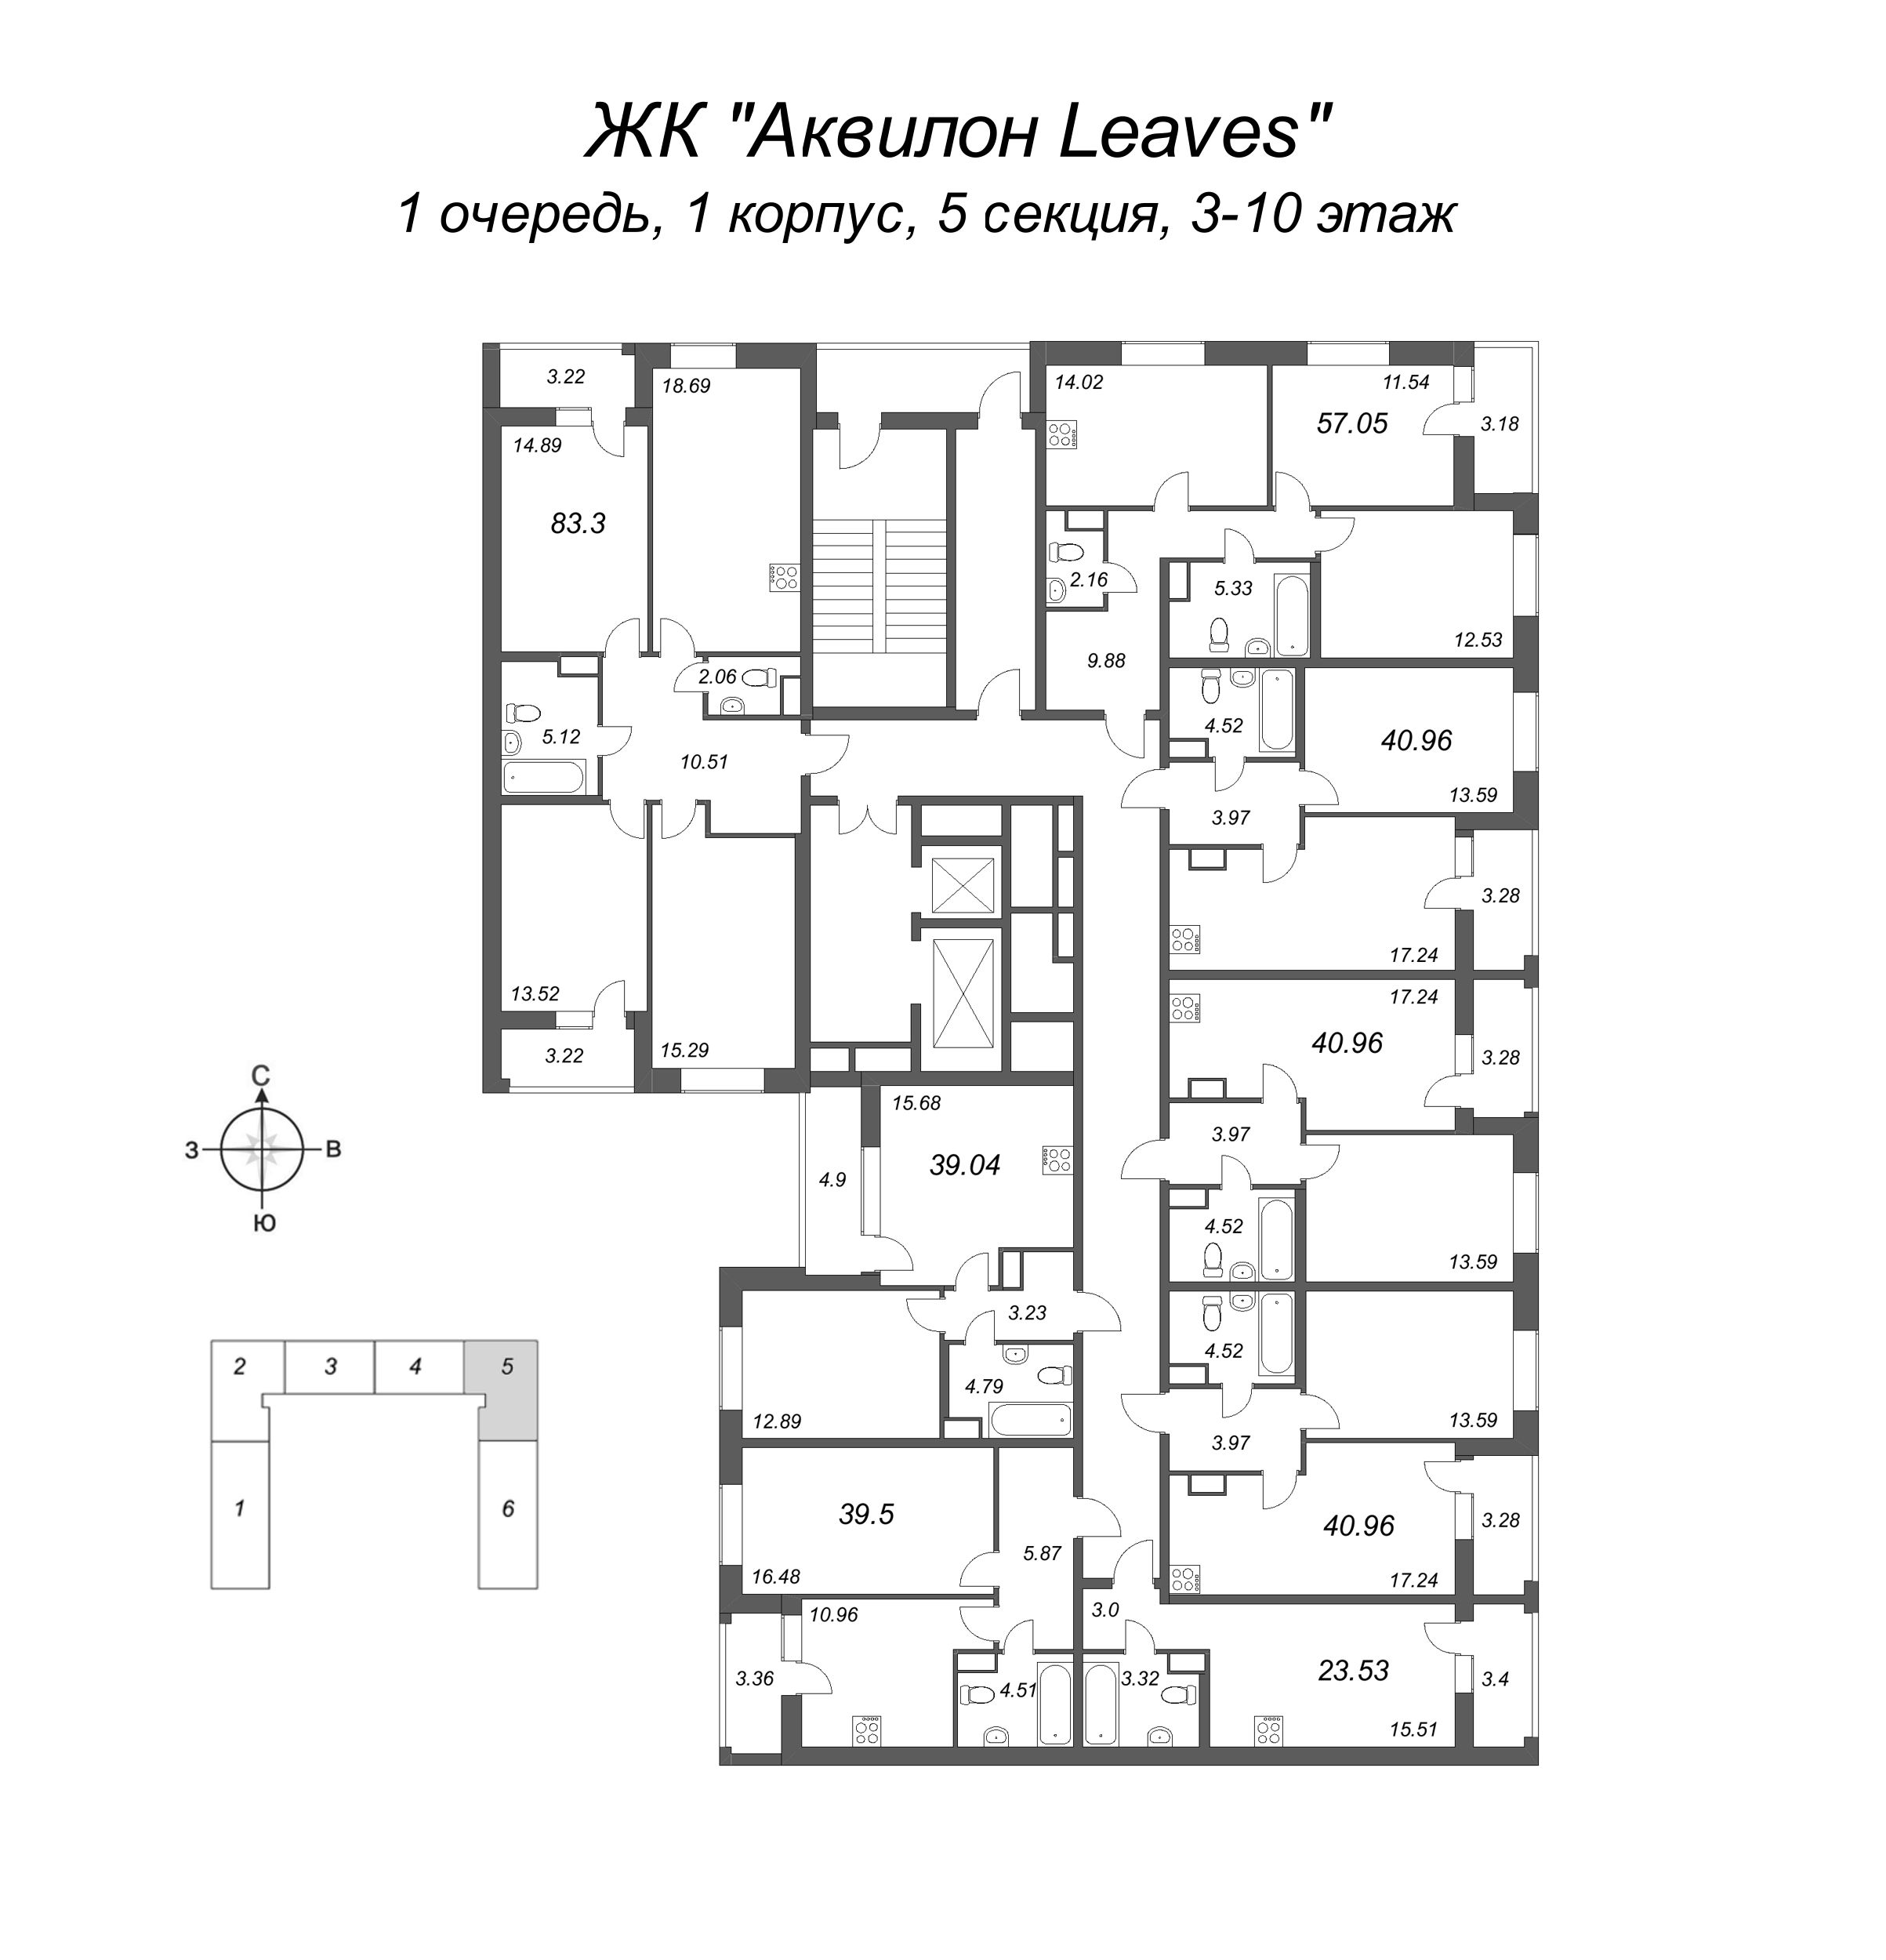 2-комнатная квартира, 57.05 м² в ЖК "Аквилон Leaves" - планировка этажа